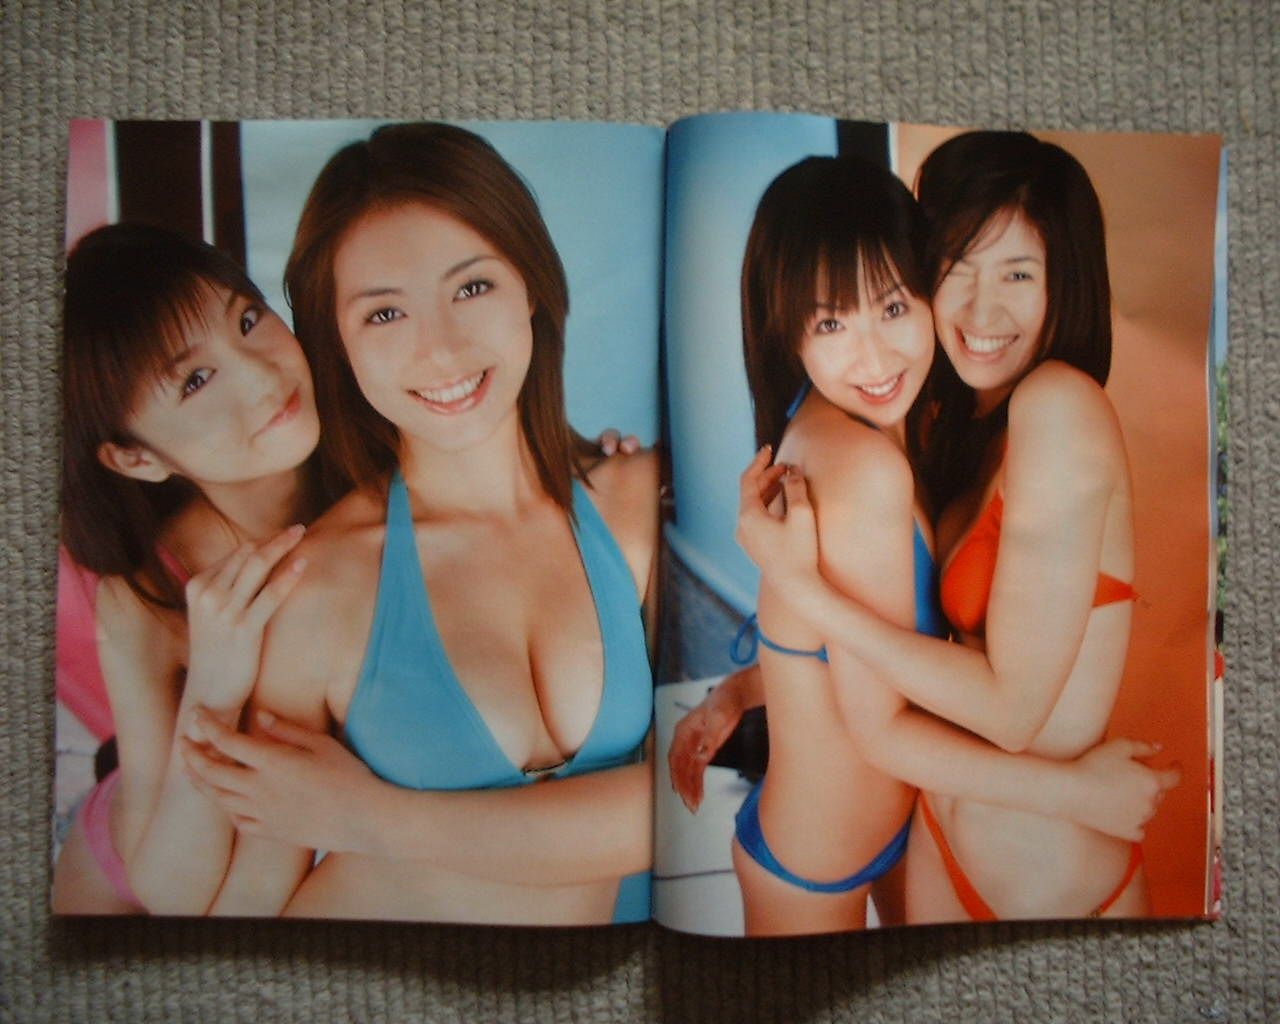  of this issue featuring Yuko Ogura, Maiko Iwasa, Chisato Morishita